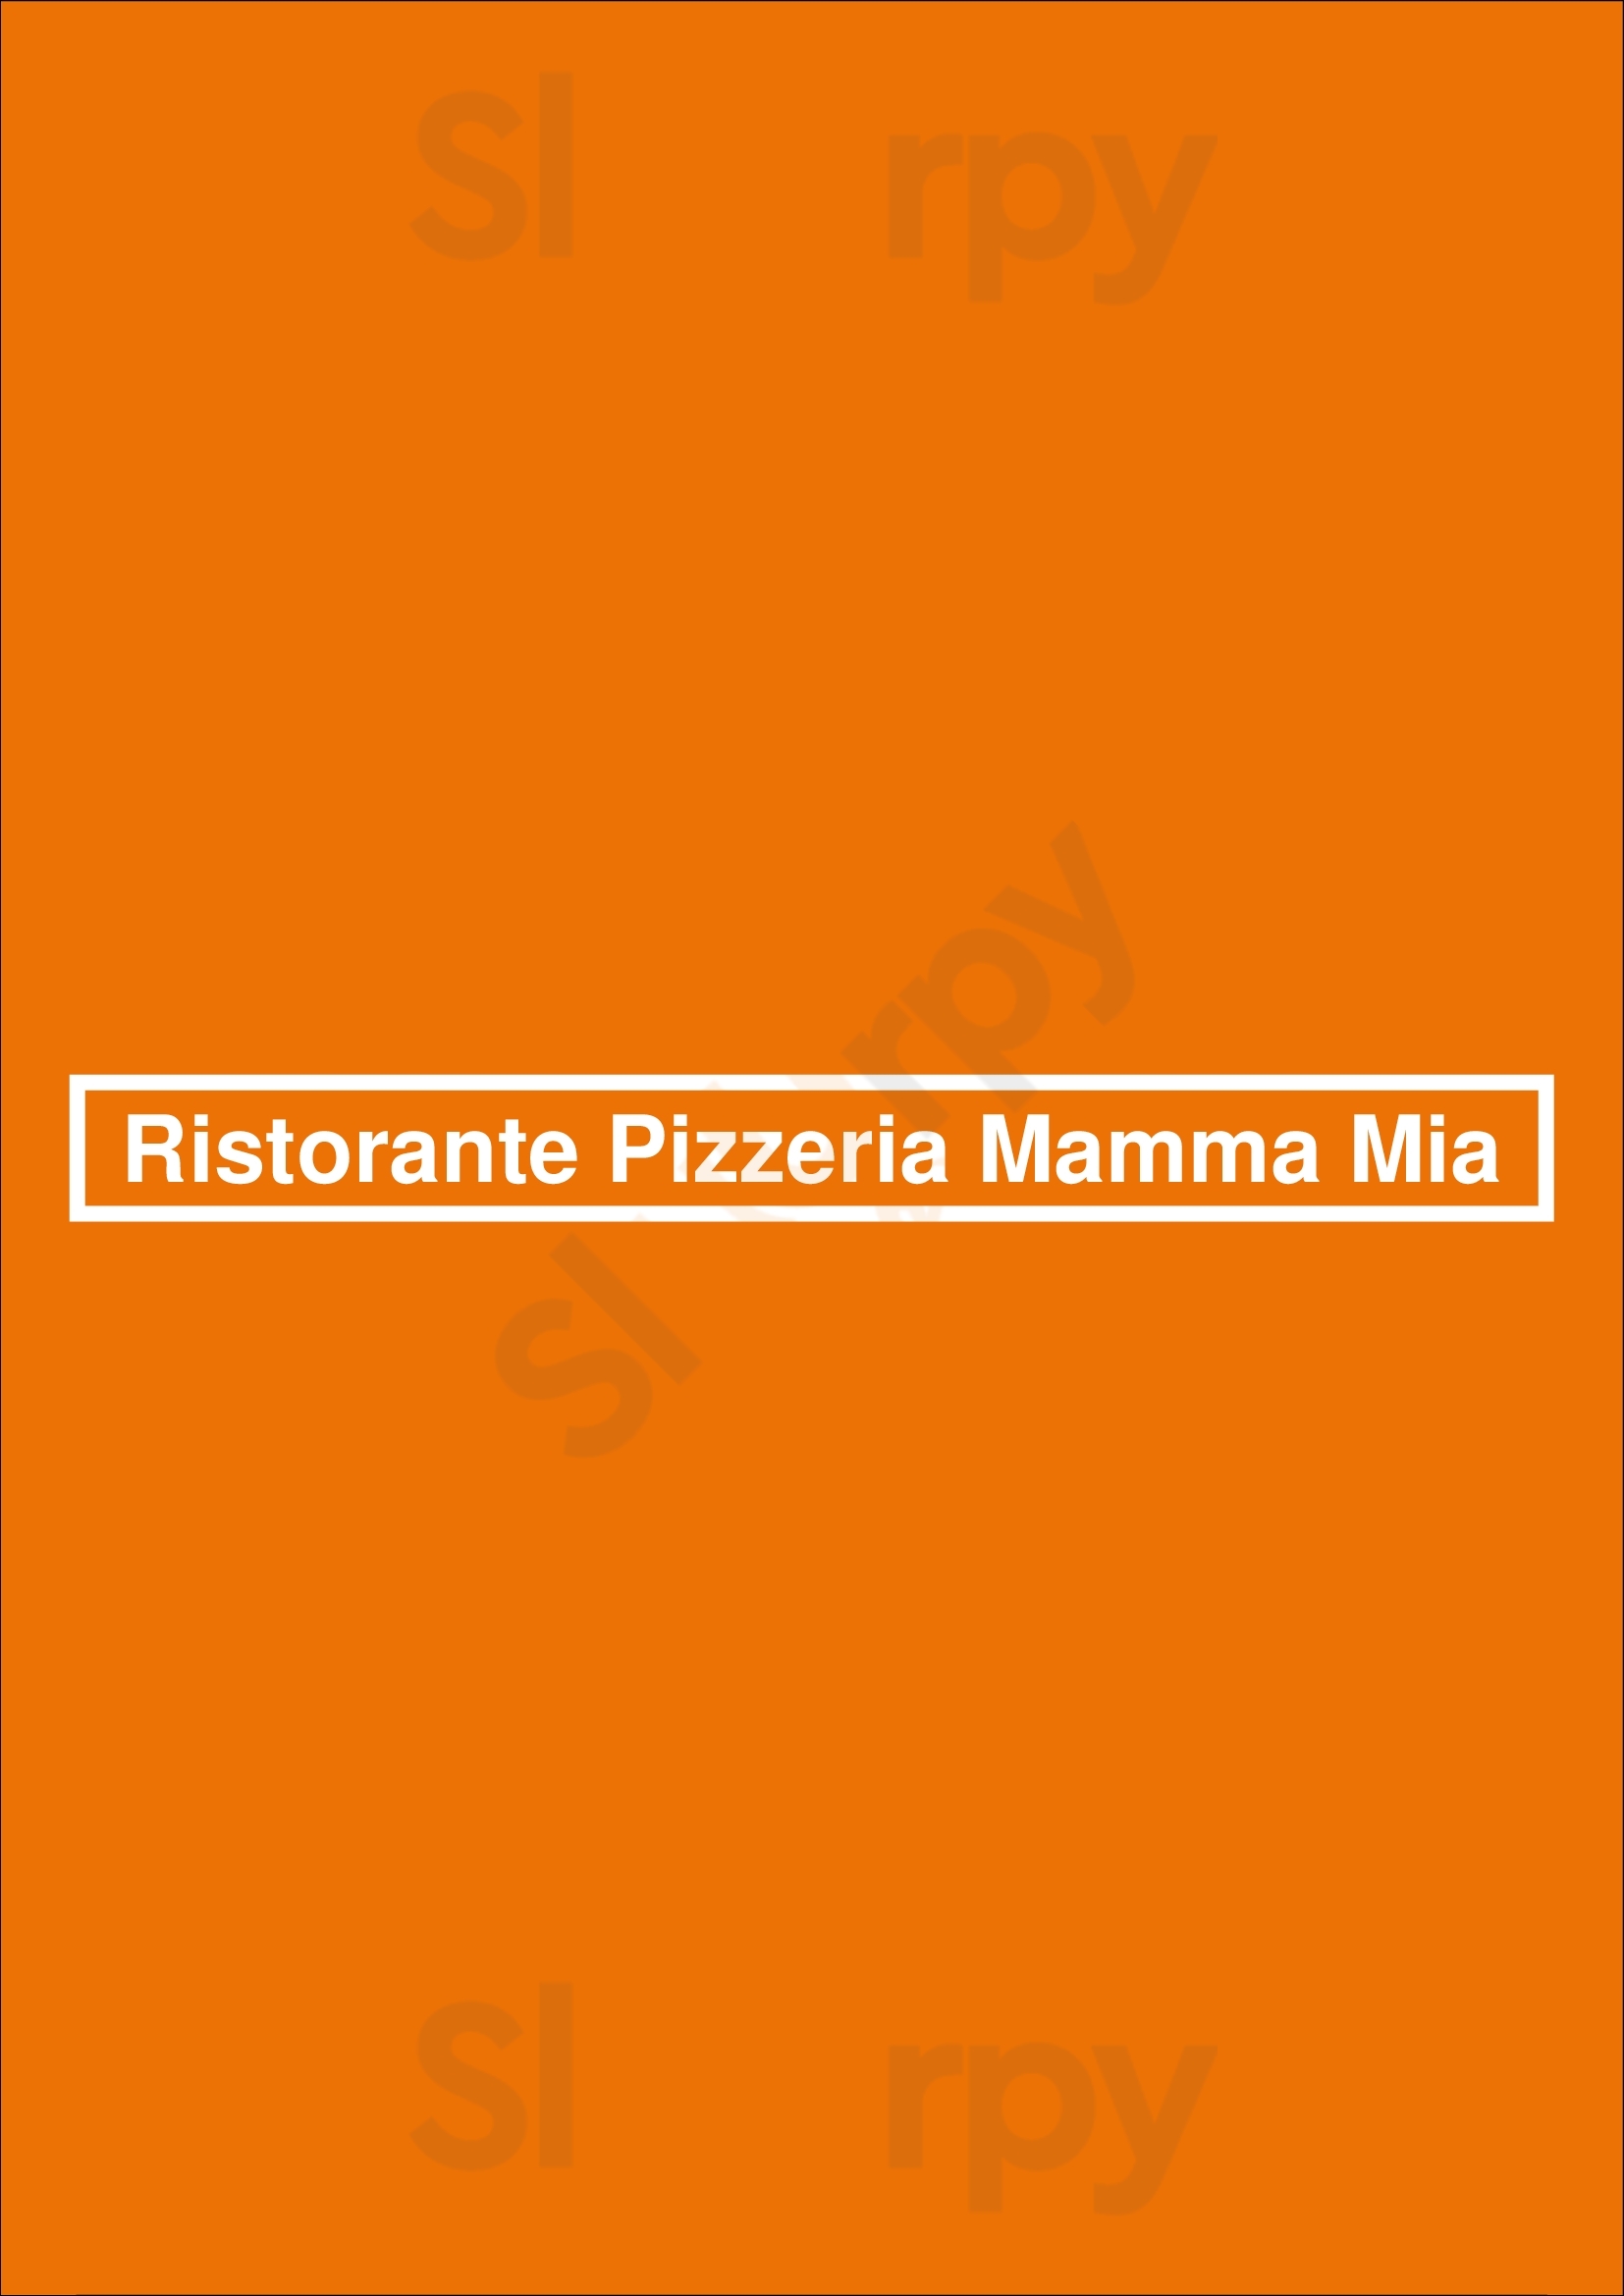 Ristorante Pizzeria Mamma Mia Braga Menu - 1